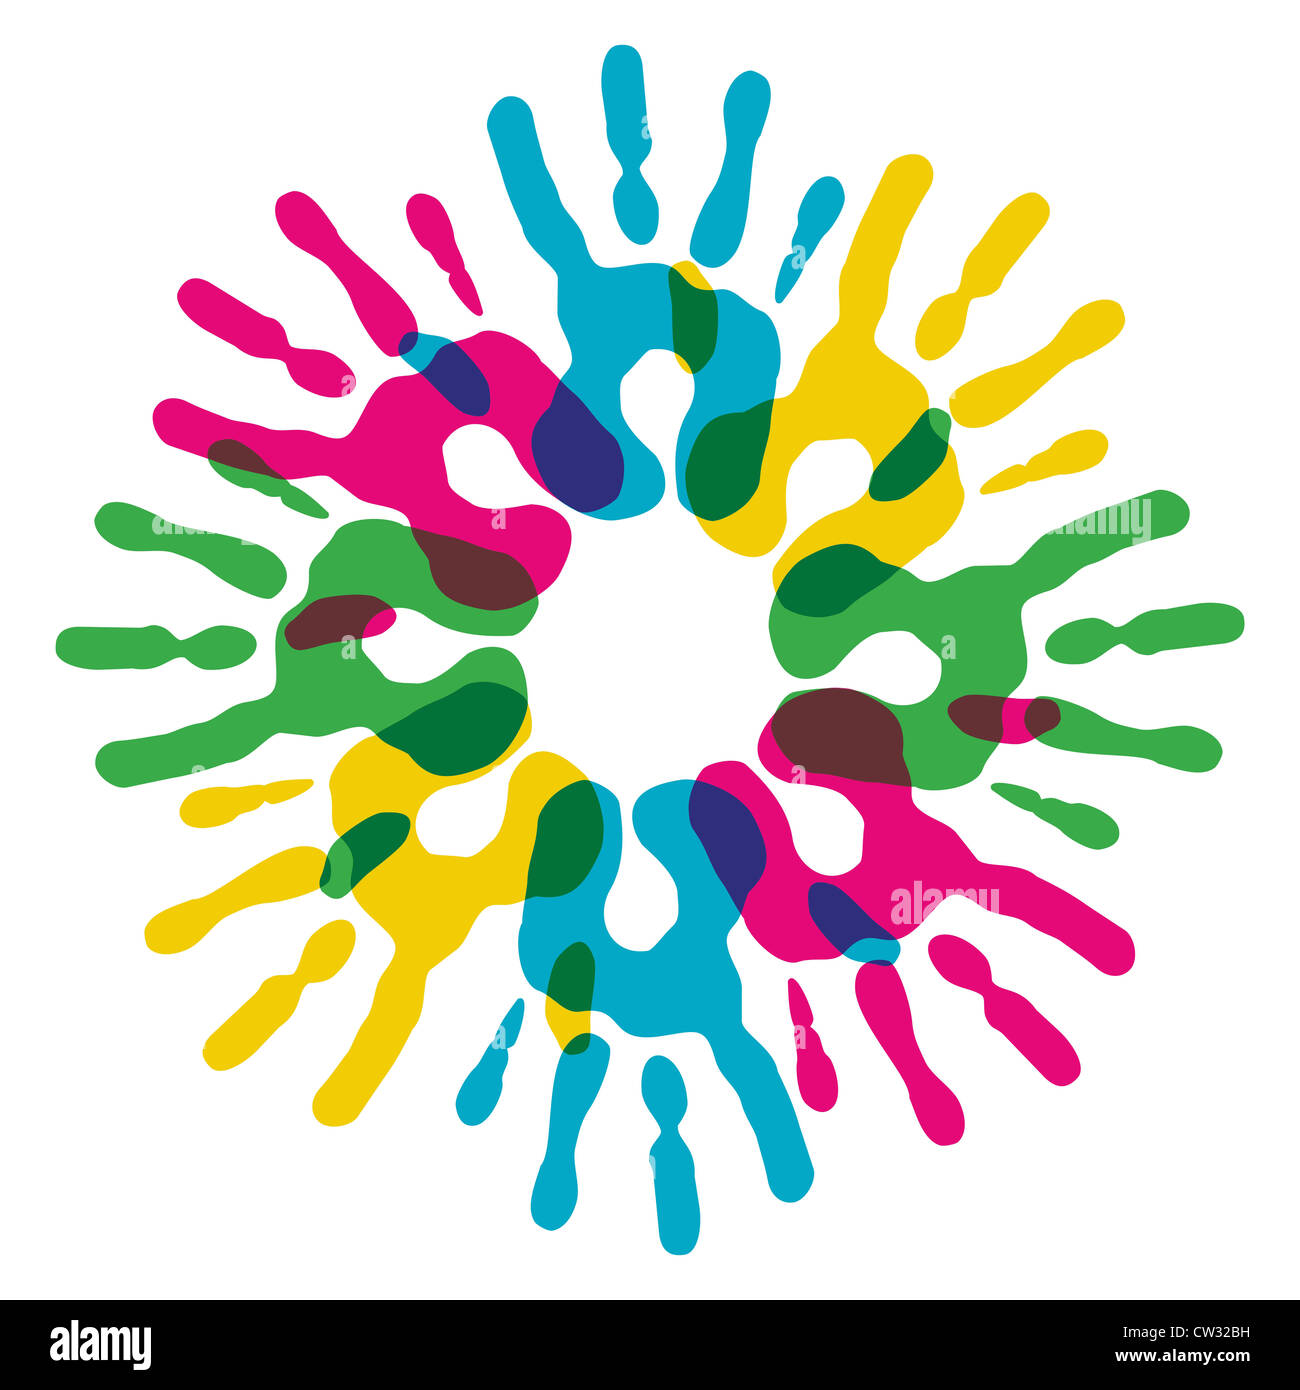 Multicolor kreative Vielfalt Hände Kreis isoliert. Vektor-Illustration für einfache Handhabung und individuelle Färbung geschichtet. Stockfoto